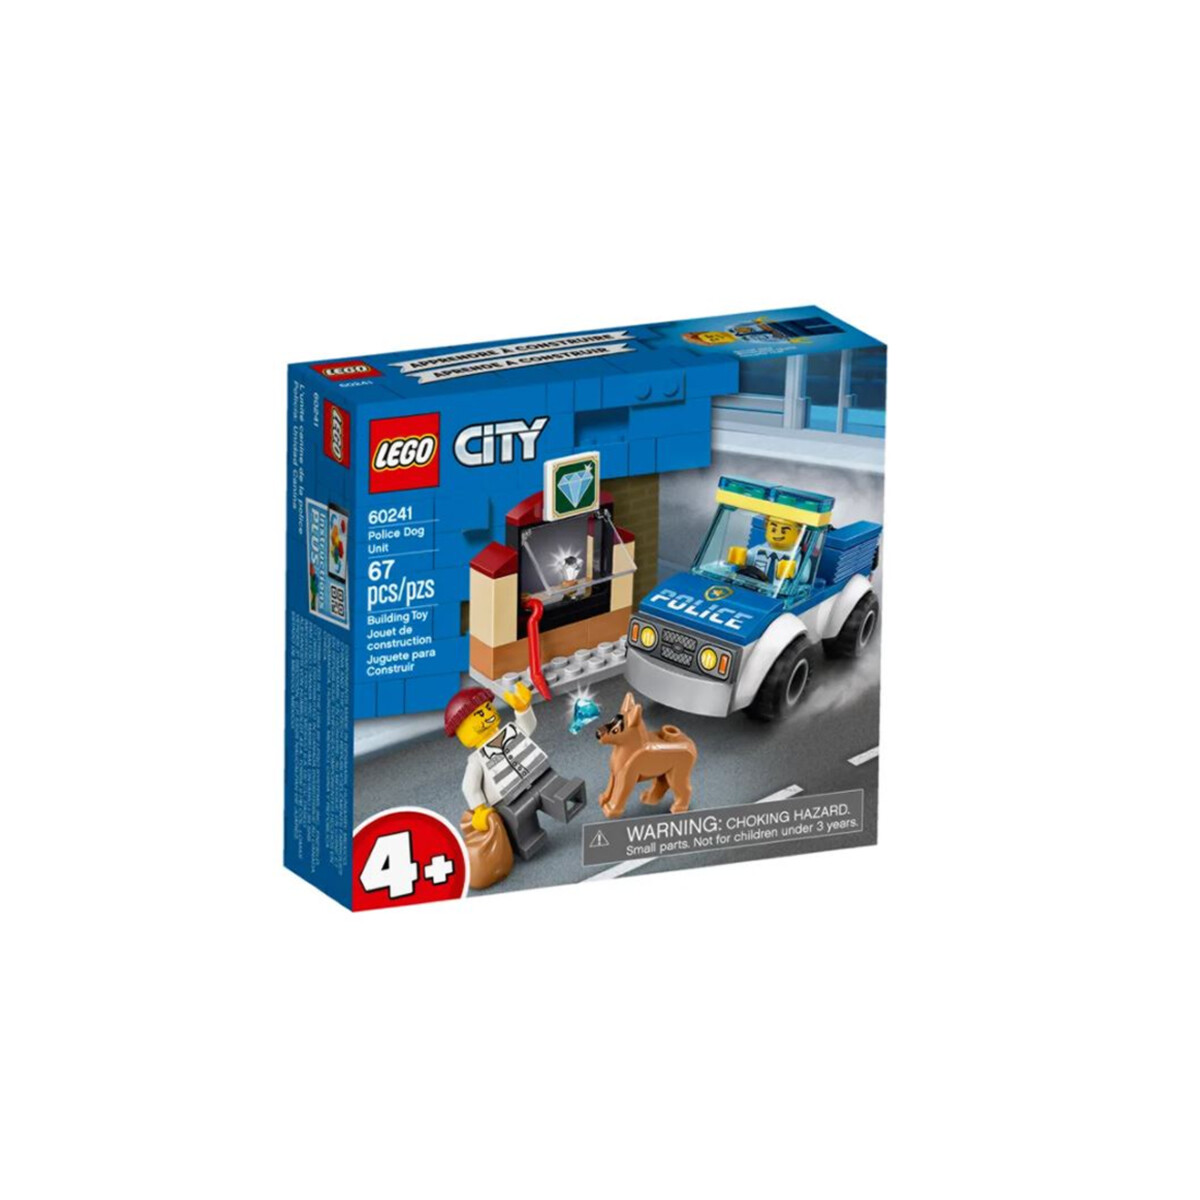 LEGO CITY Police Dog Unit 67 Pcs 